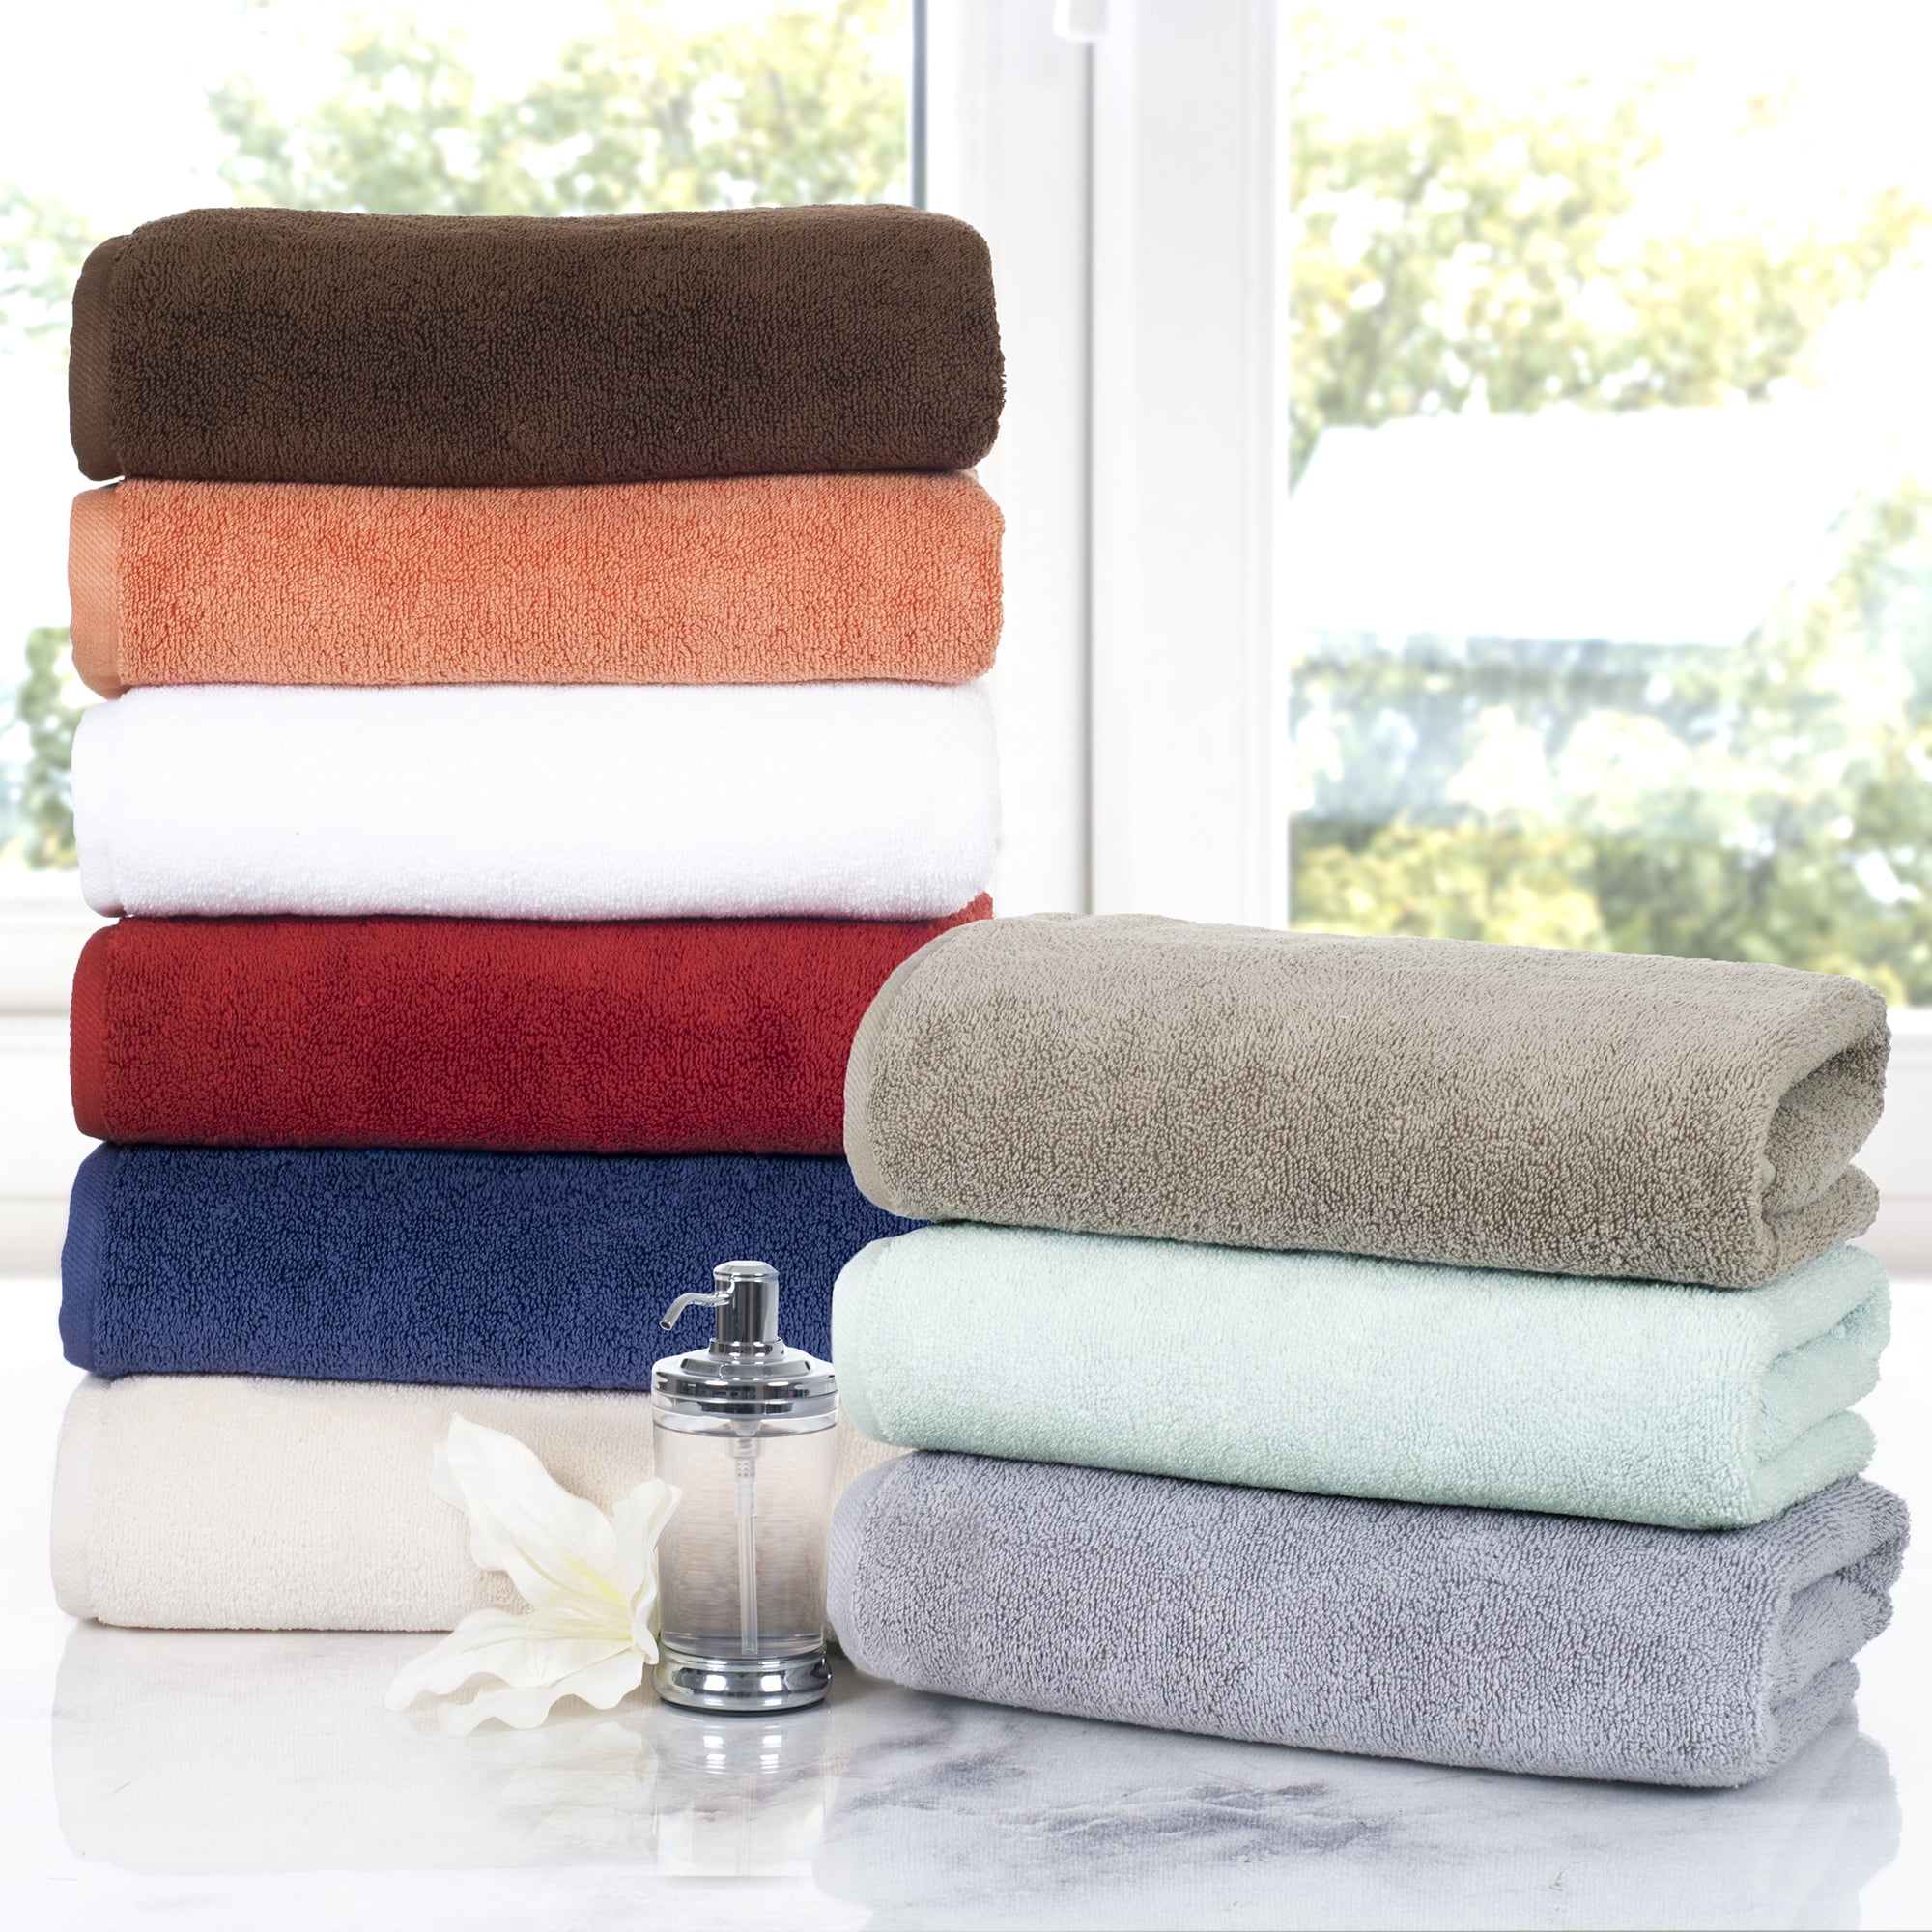 Cotton Bath Towel Set, 6 Piece, White, 58L x 30W | Kirkland's Home